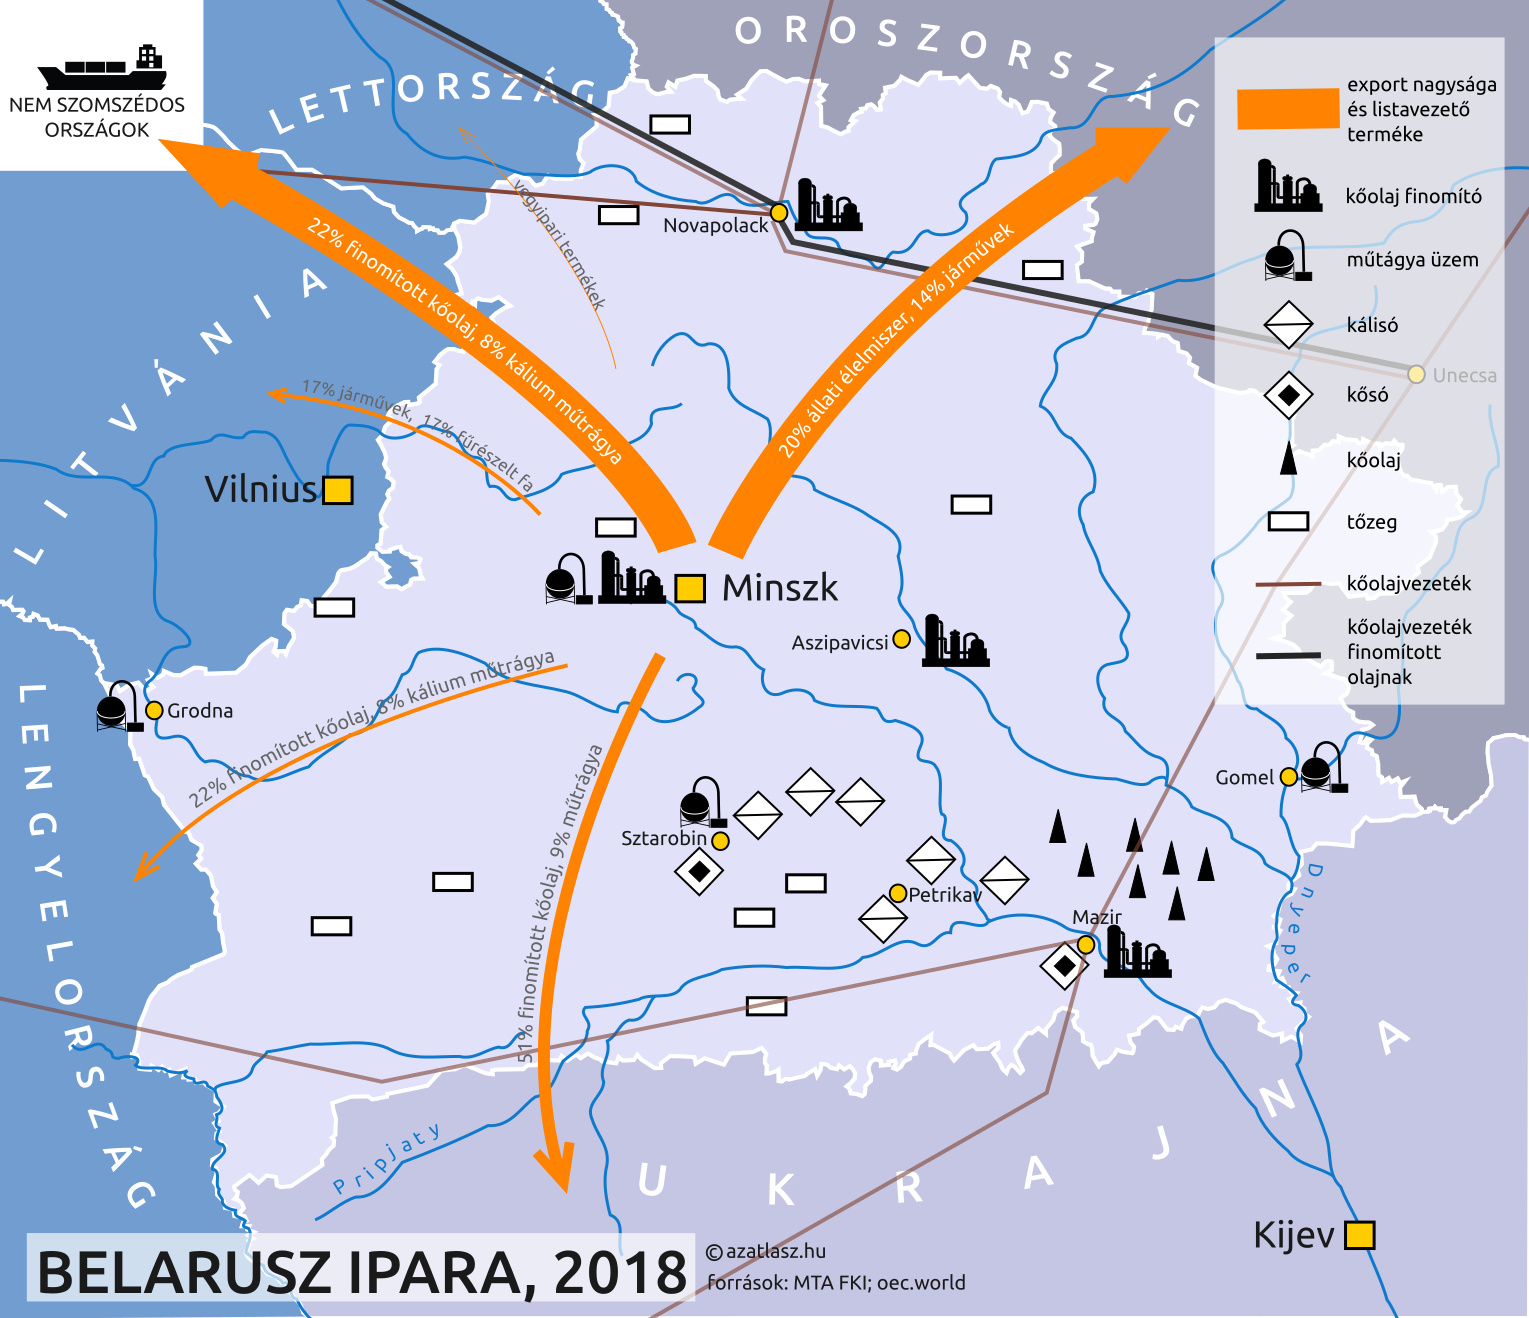 feherororszorszag ipar térkép 2018